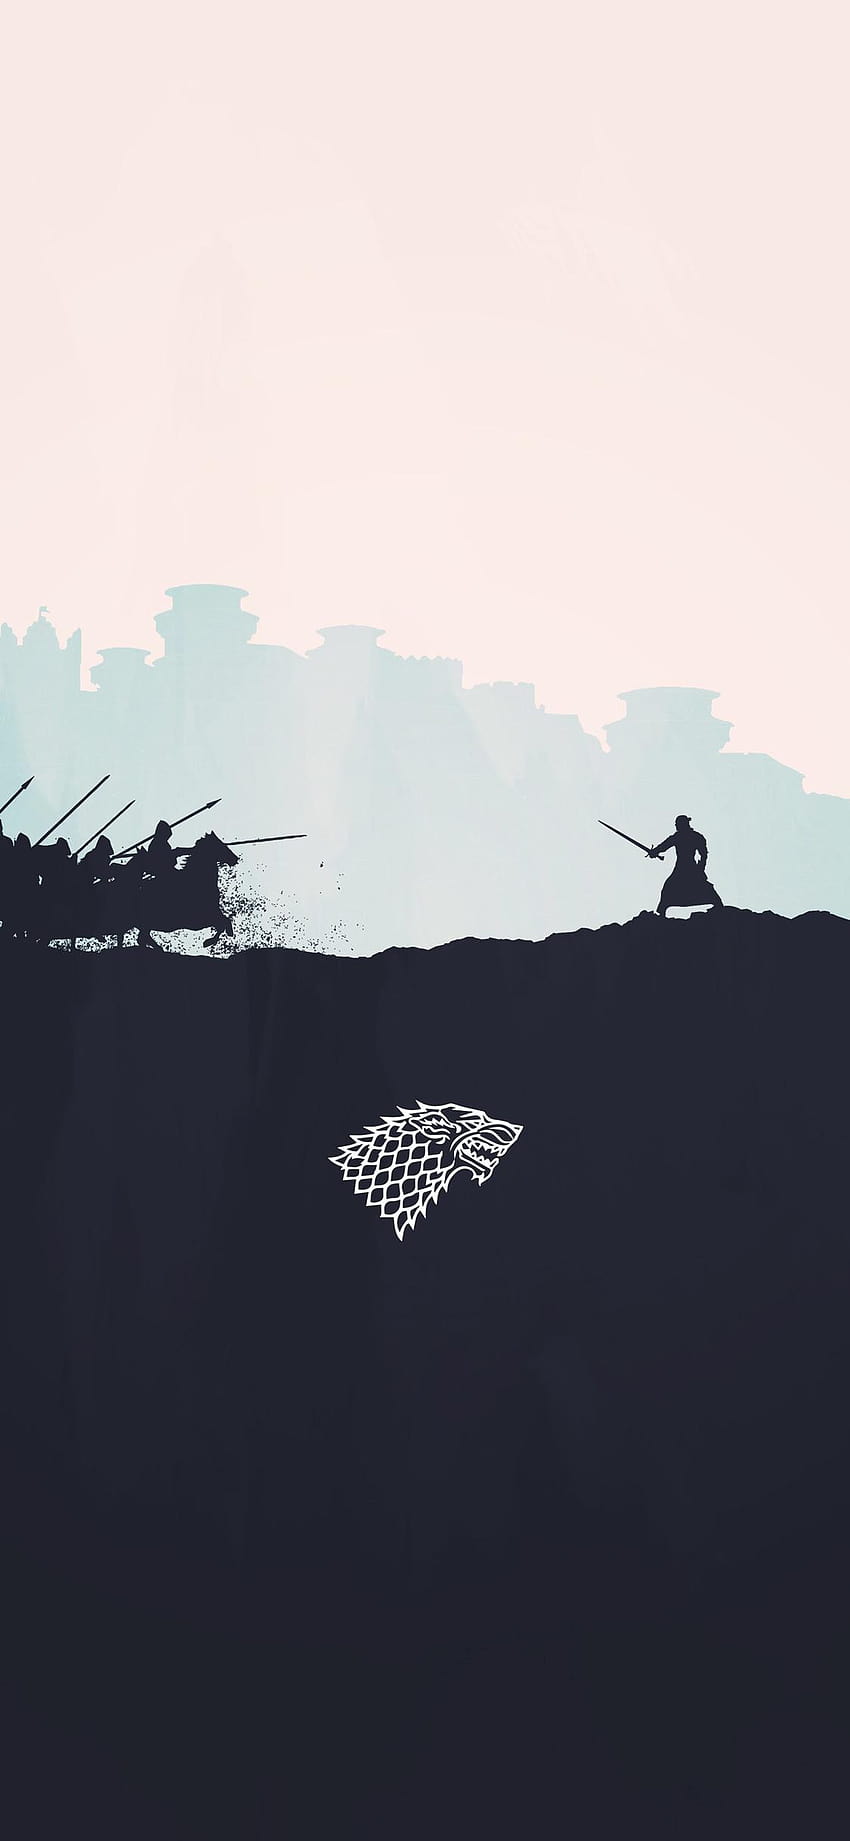 Game of Thrones Terbaik untuk iPhone, game of thrones 8 wallpaper ponsel HD